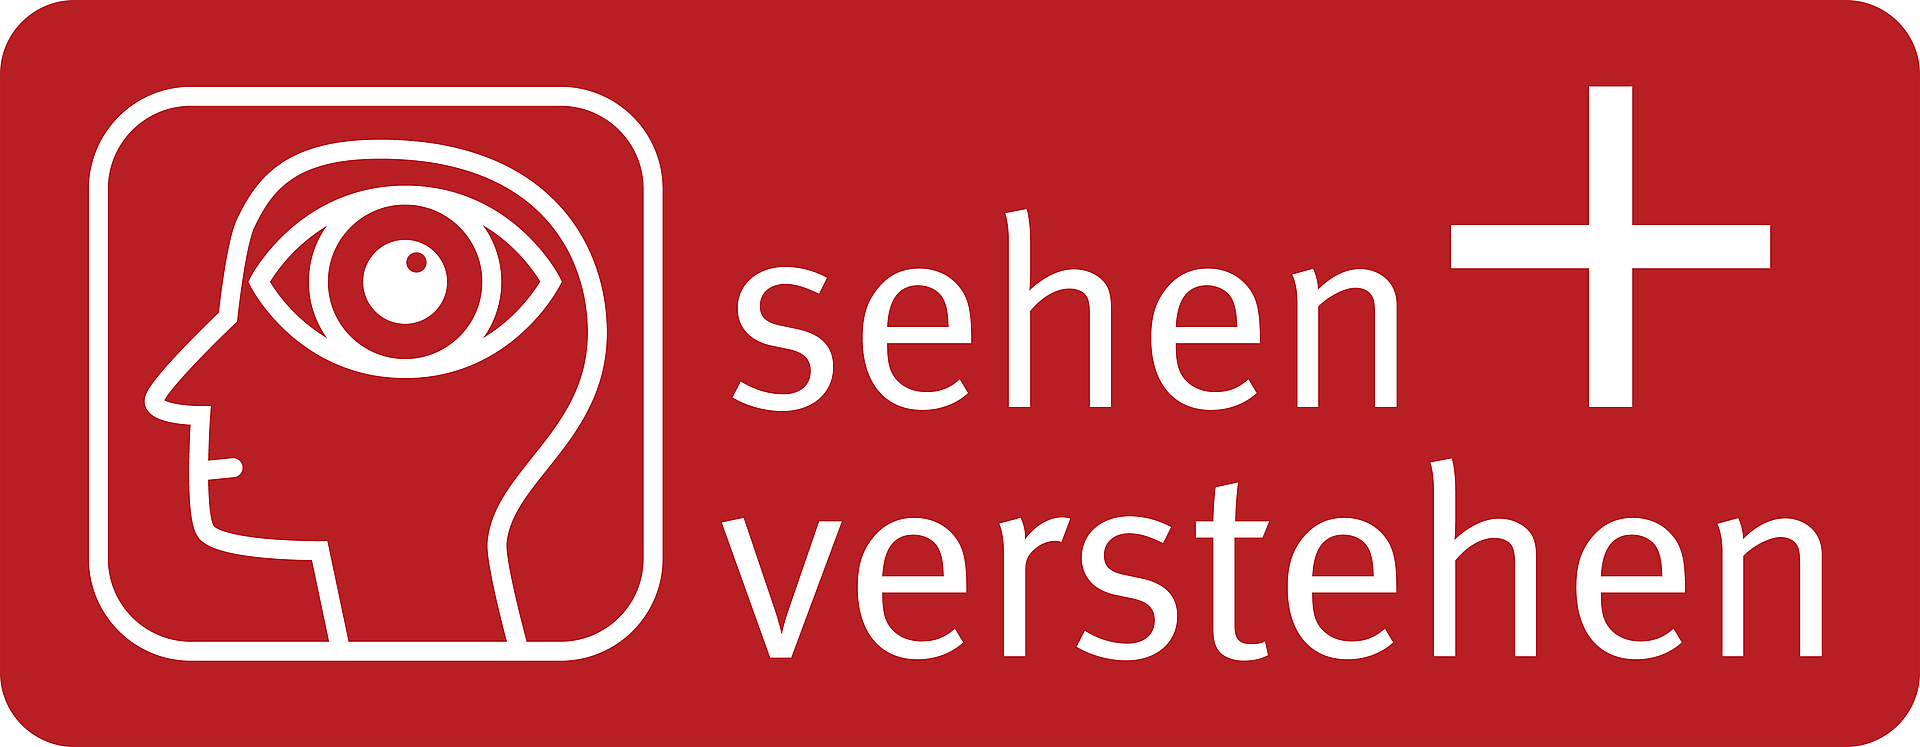 Logo  Bausteine sehen + verstehen